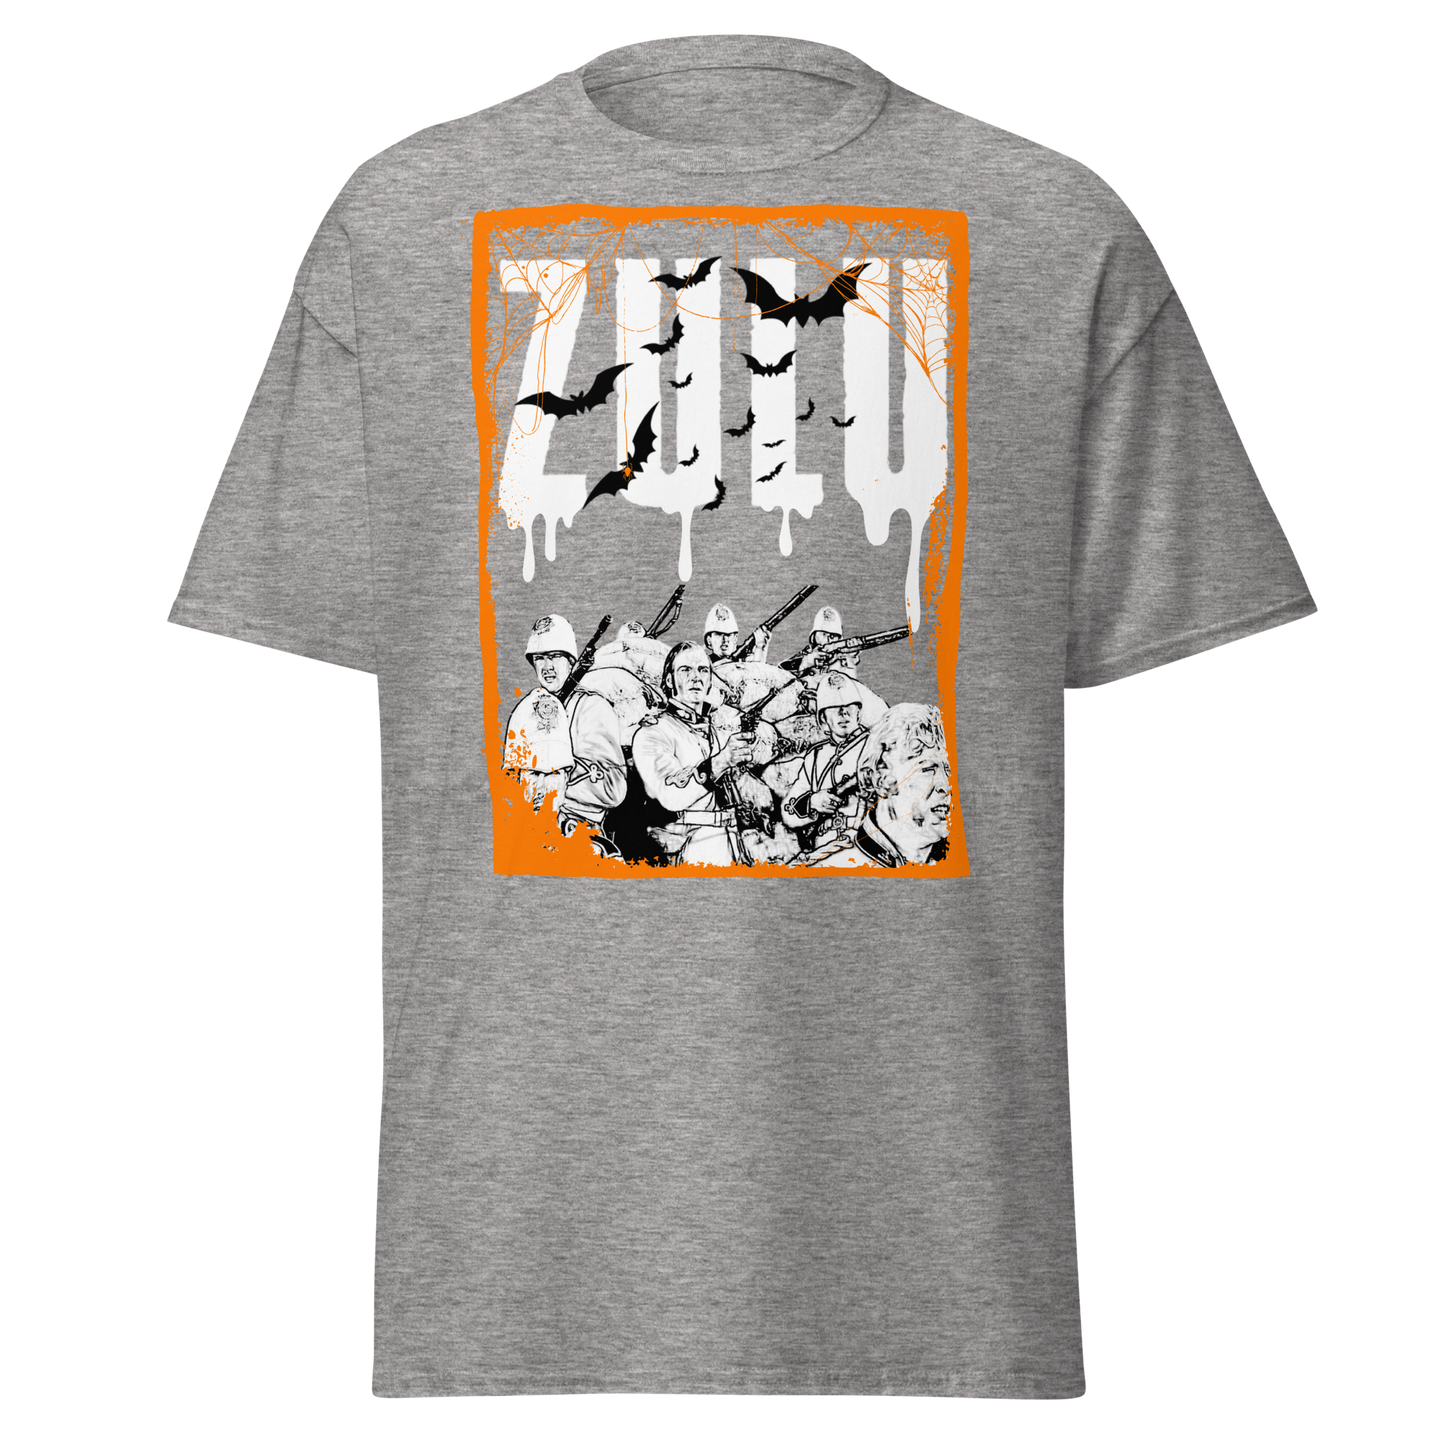 ZULU Final Stand - Premium Limited Edition Halloween (t-shirt)